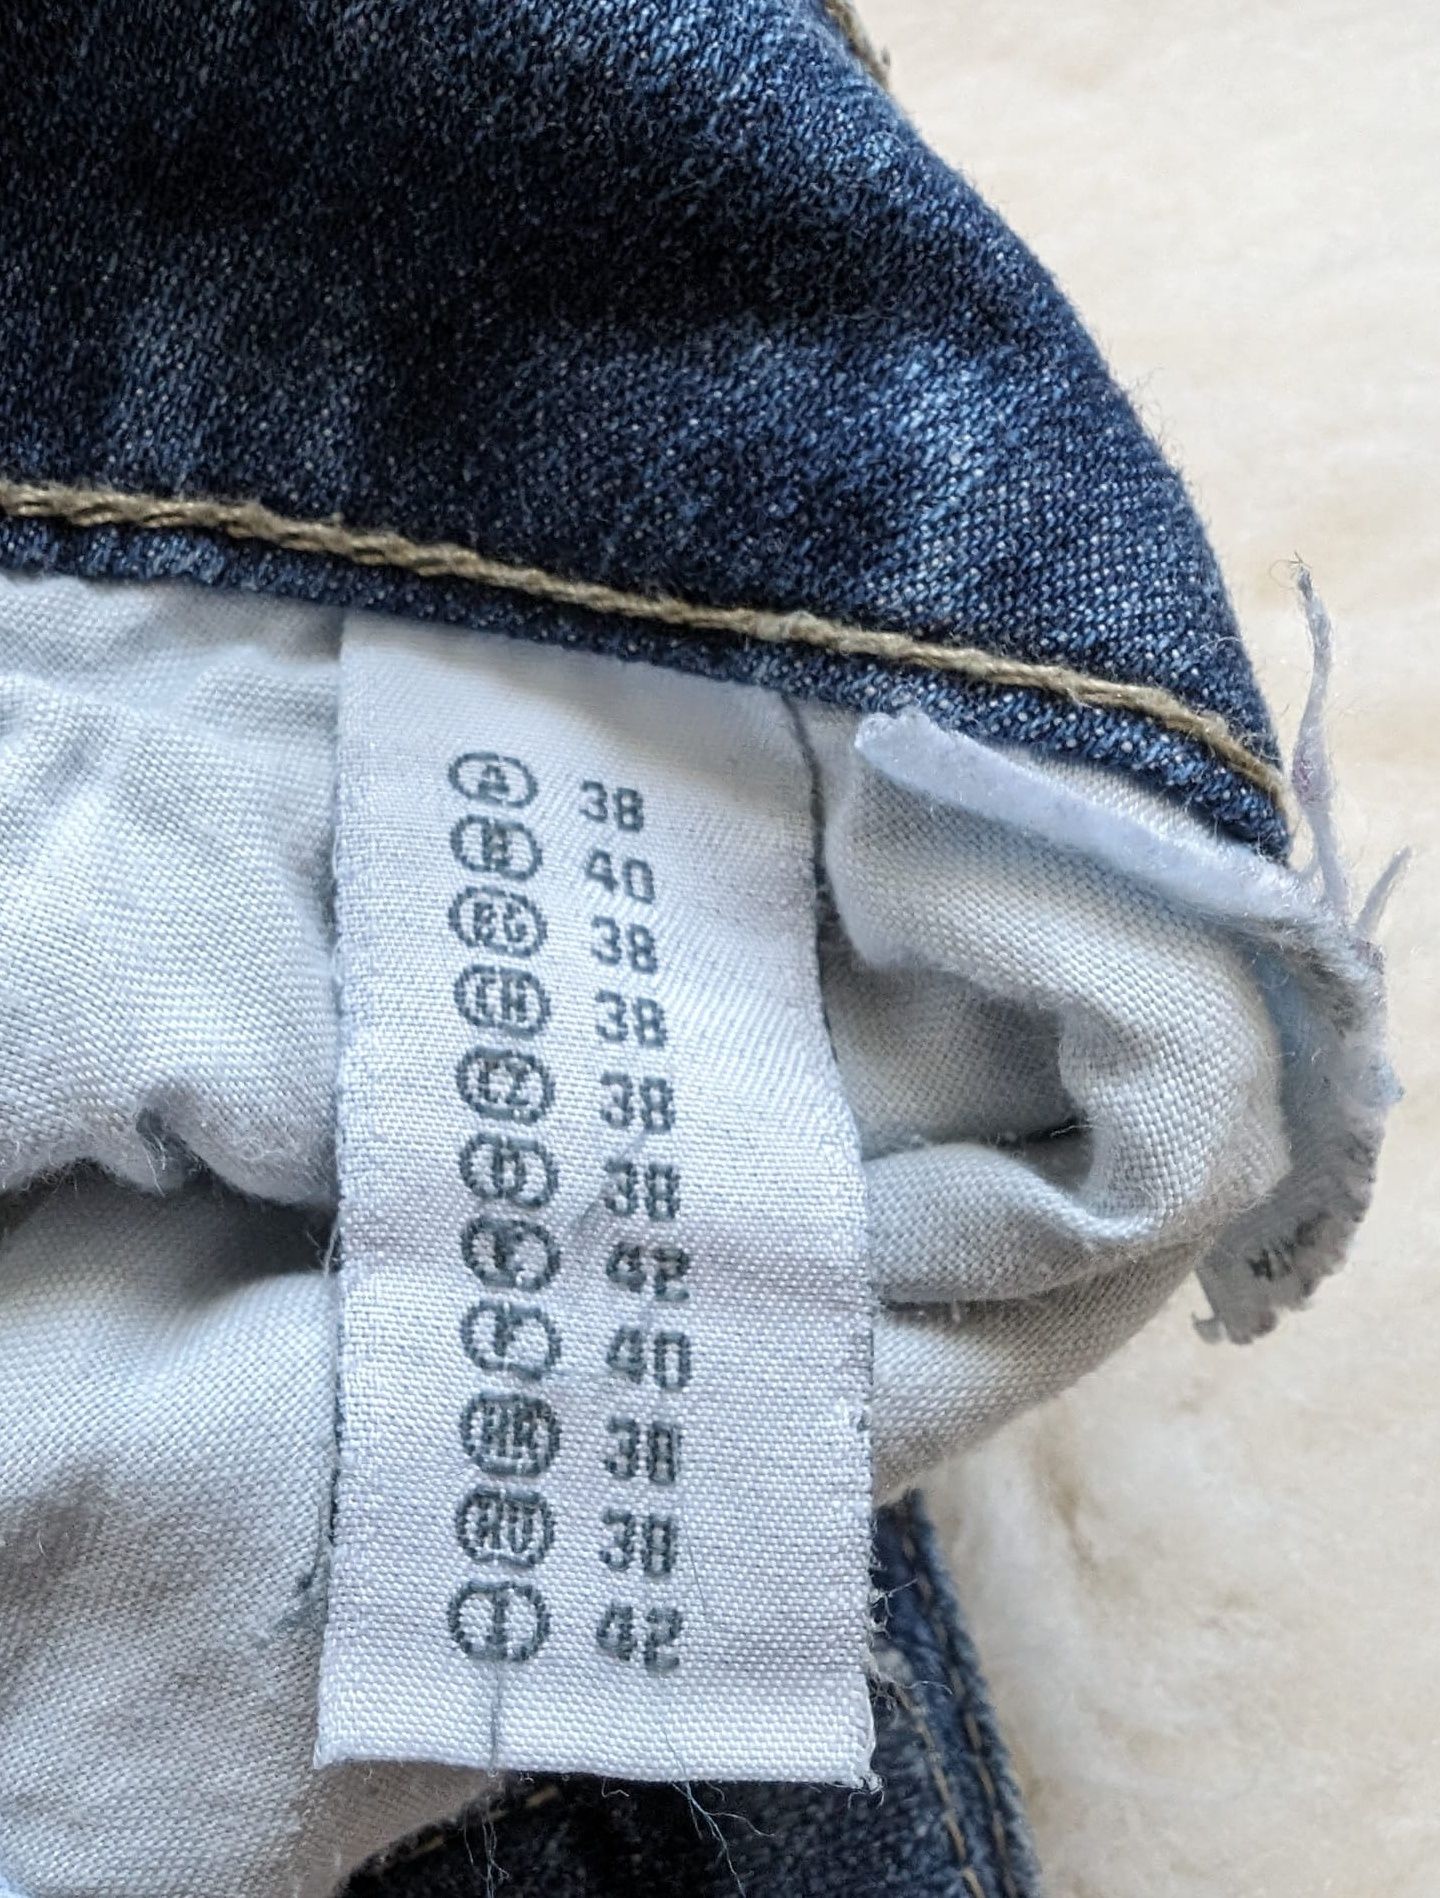 CLOCKHOUSE | r. 38 | Damskie spodnie jeans | Niski stan - biodrówki